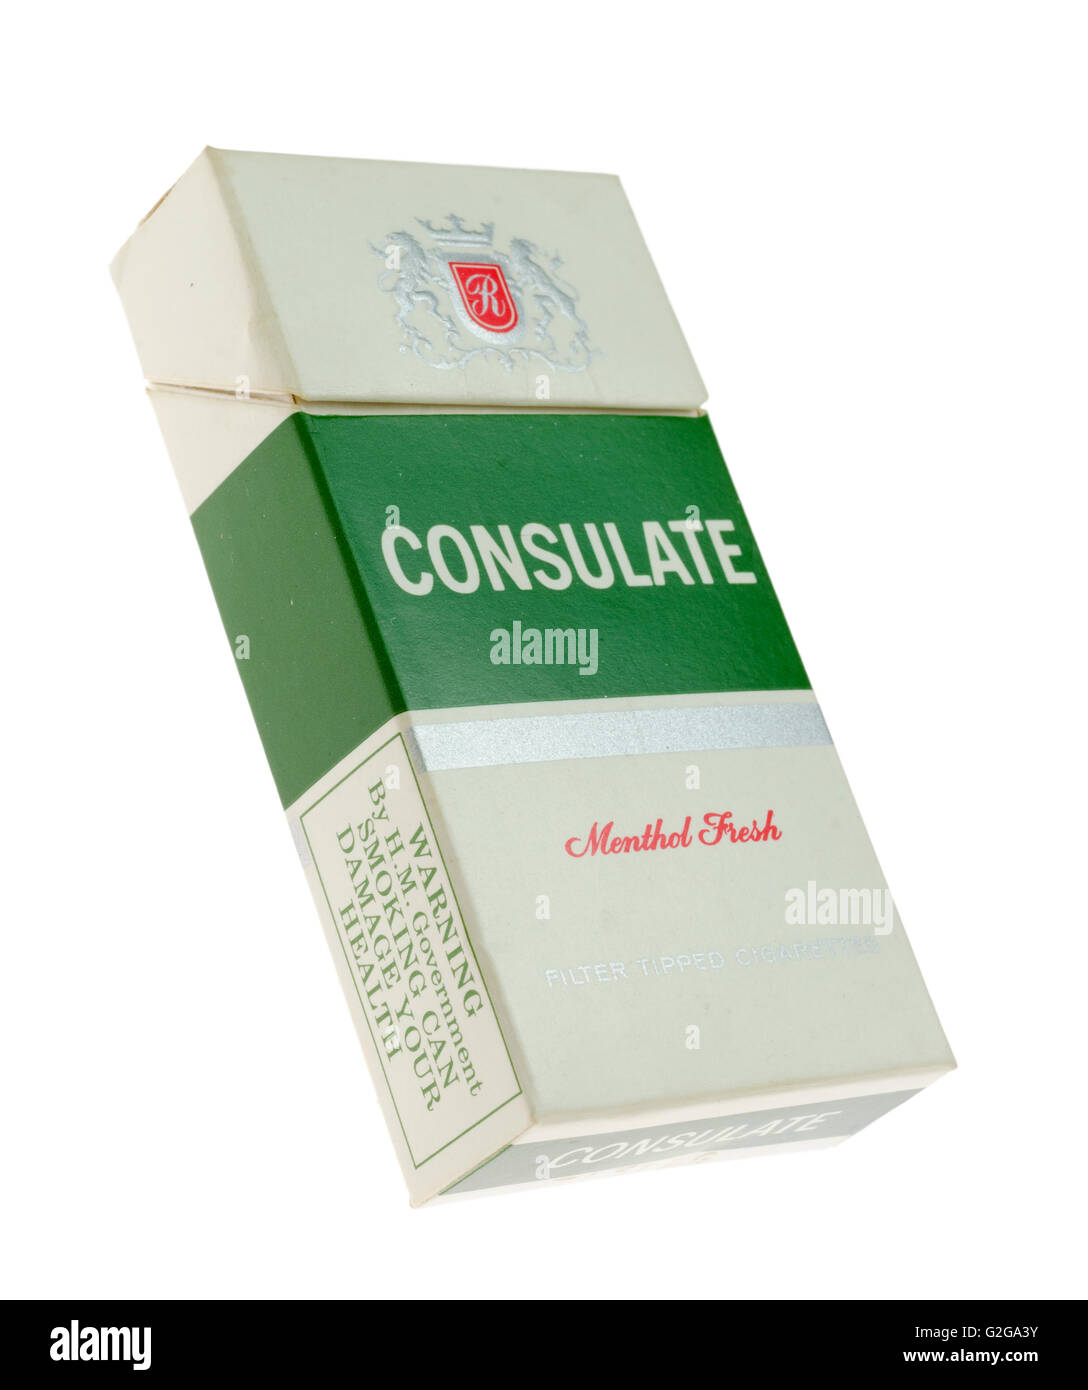 Sigarette al mentolo immagini e fotografie stock ad alta risoluzione - Alamy